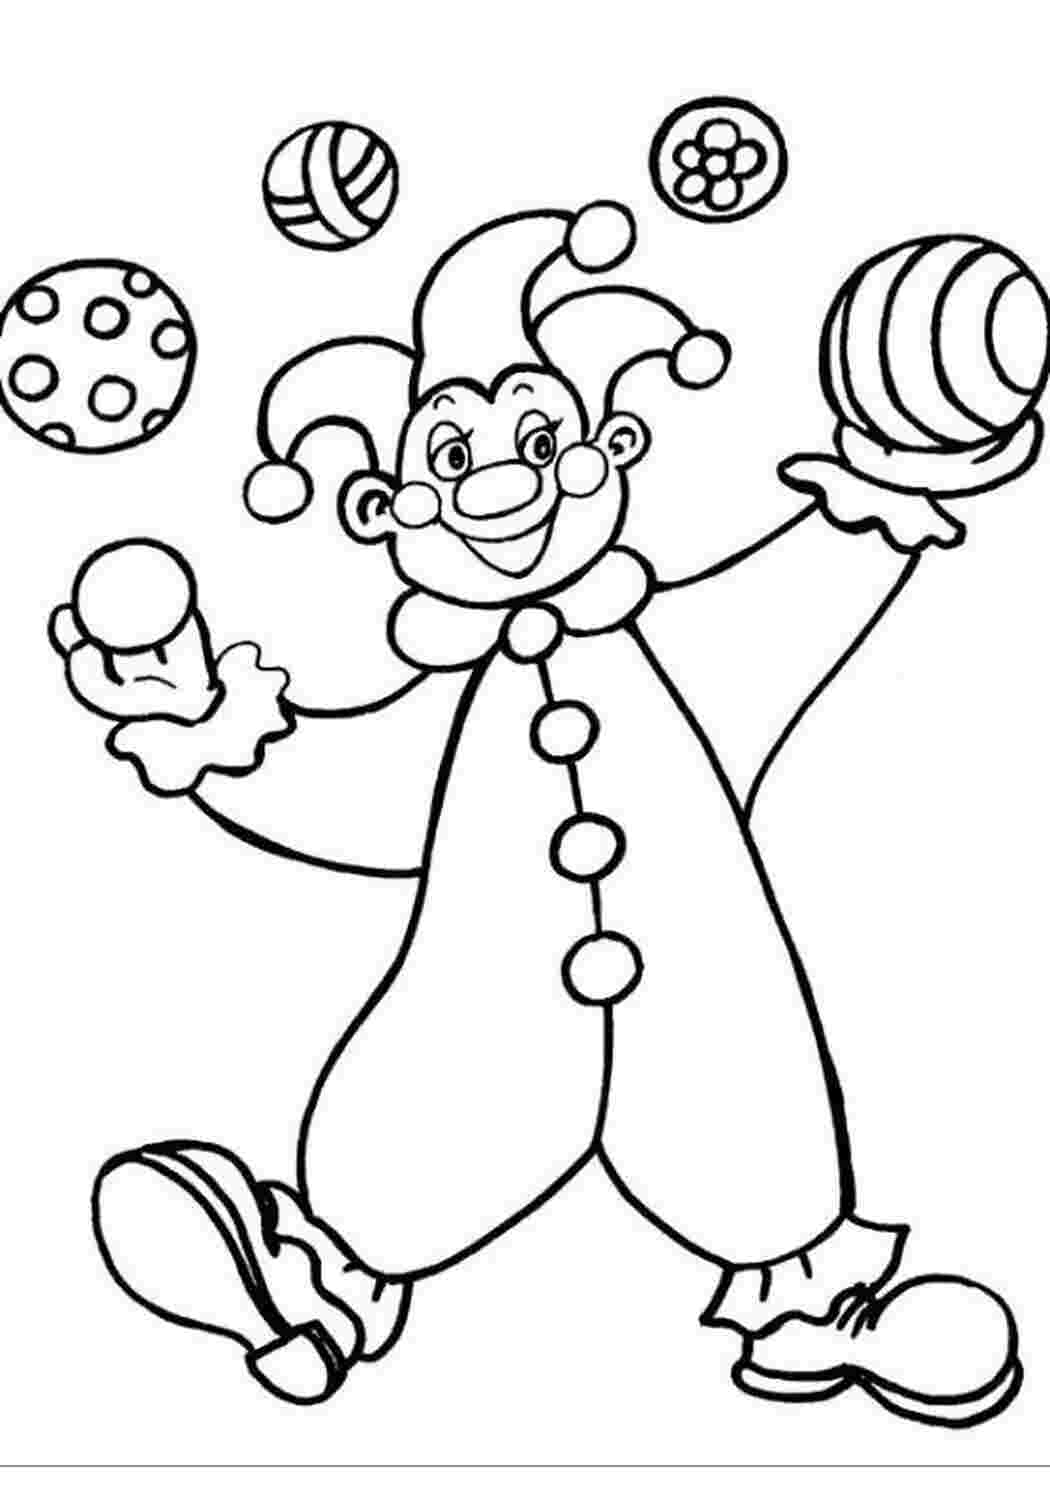 Клоун раскраска для детей 4 5. Цирк раскраска для детей. Клоуны раскраска для детей 5 лет. Черно белый клоун. Клоун без улыбки раскраска.